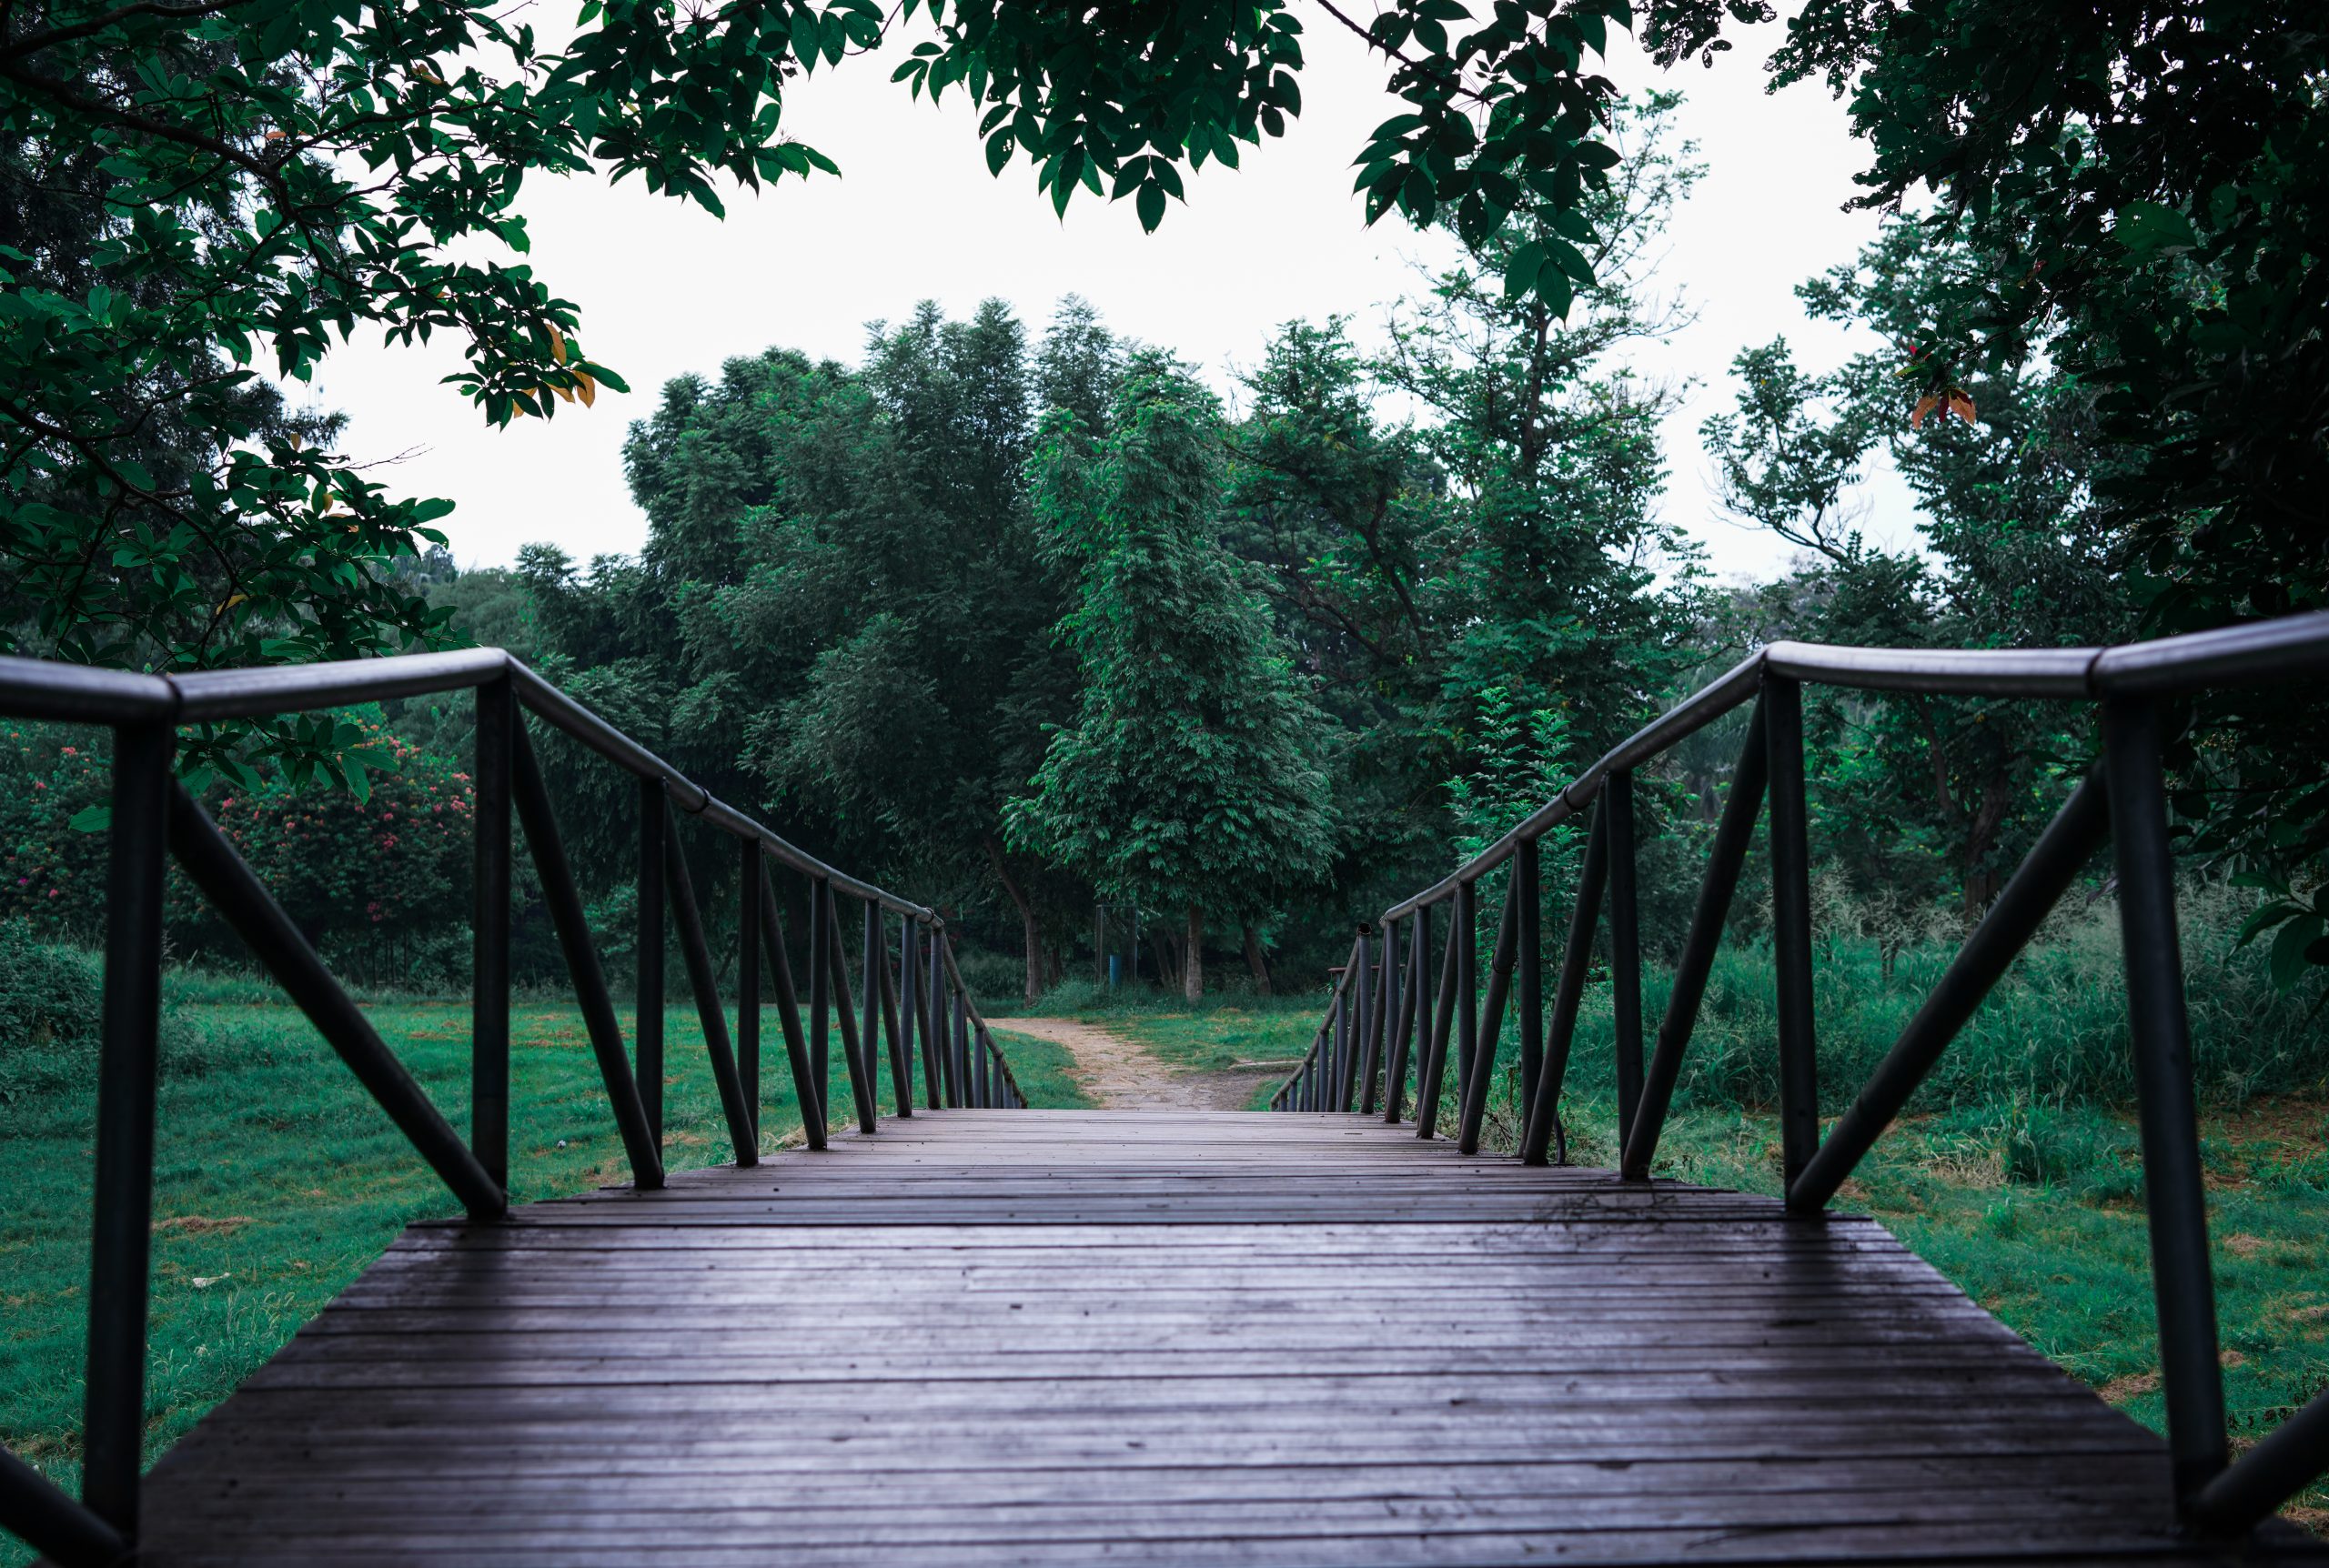 Bridge of garden